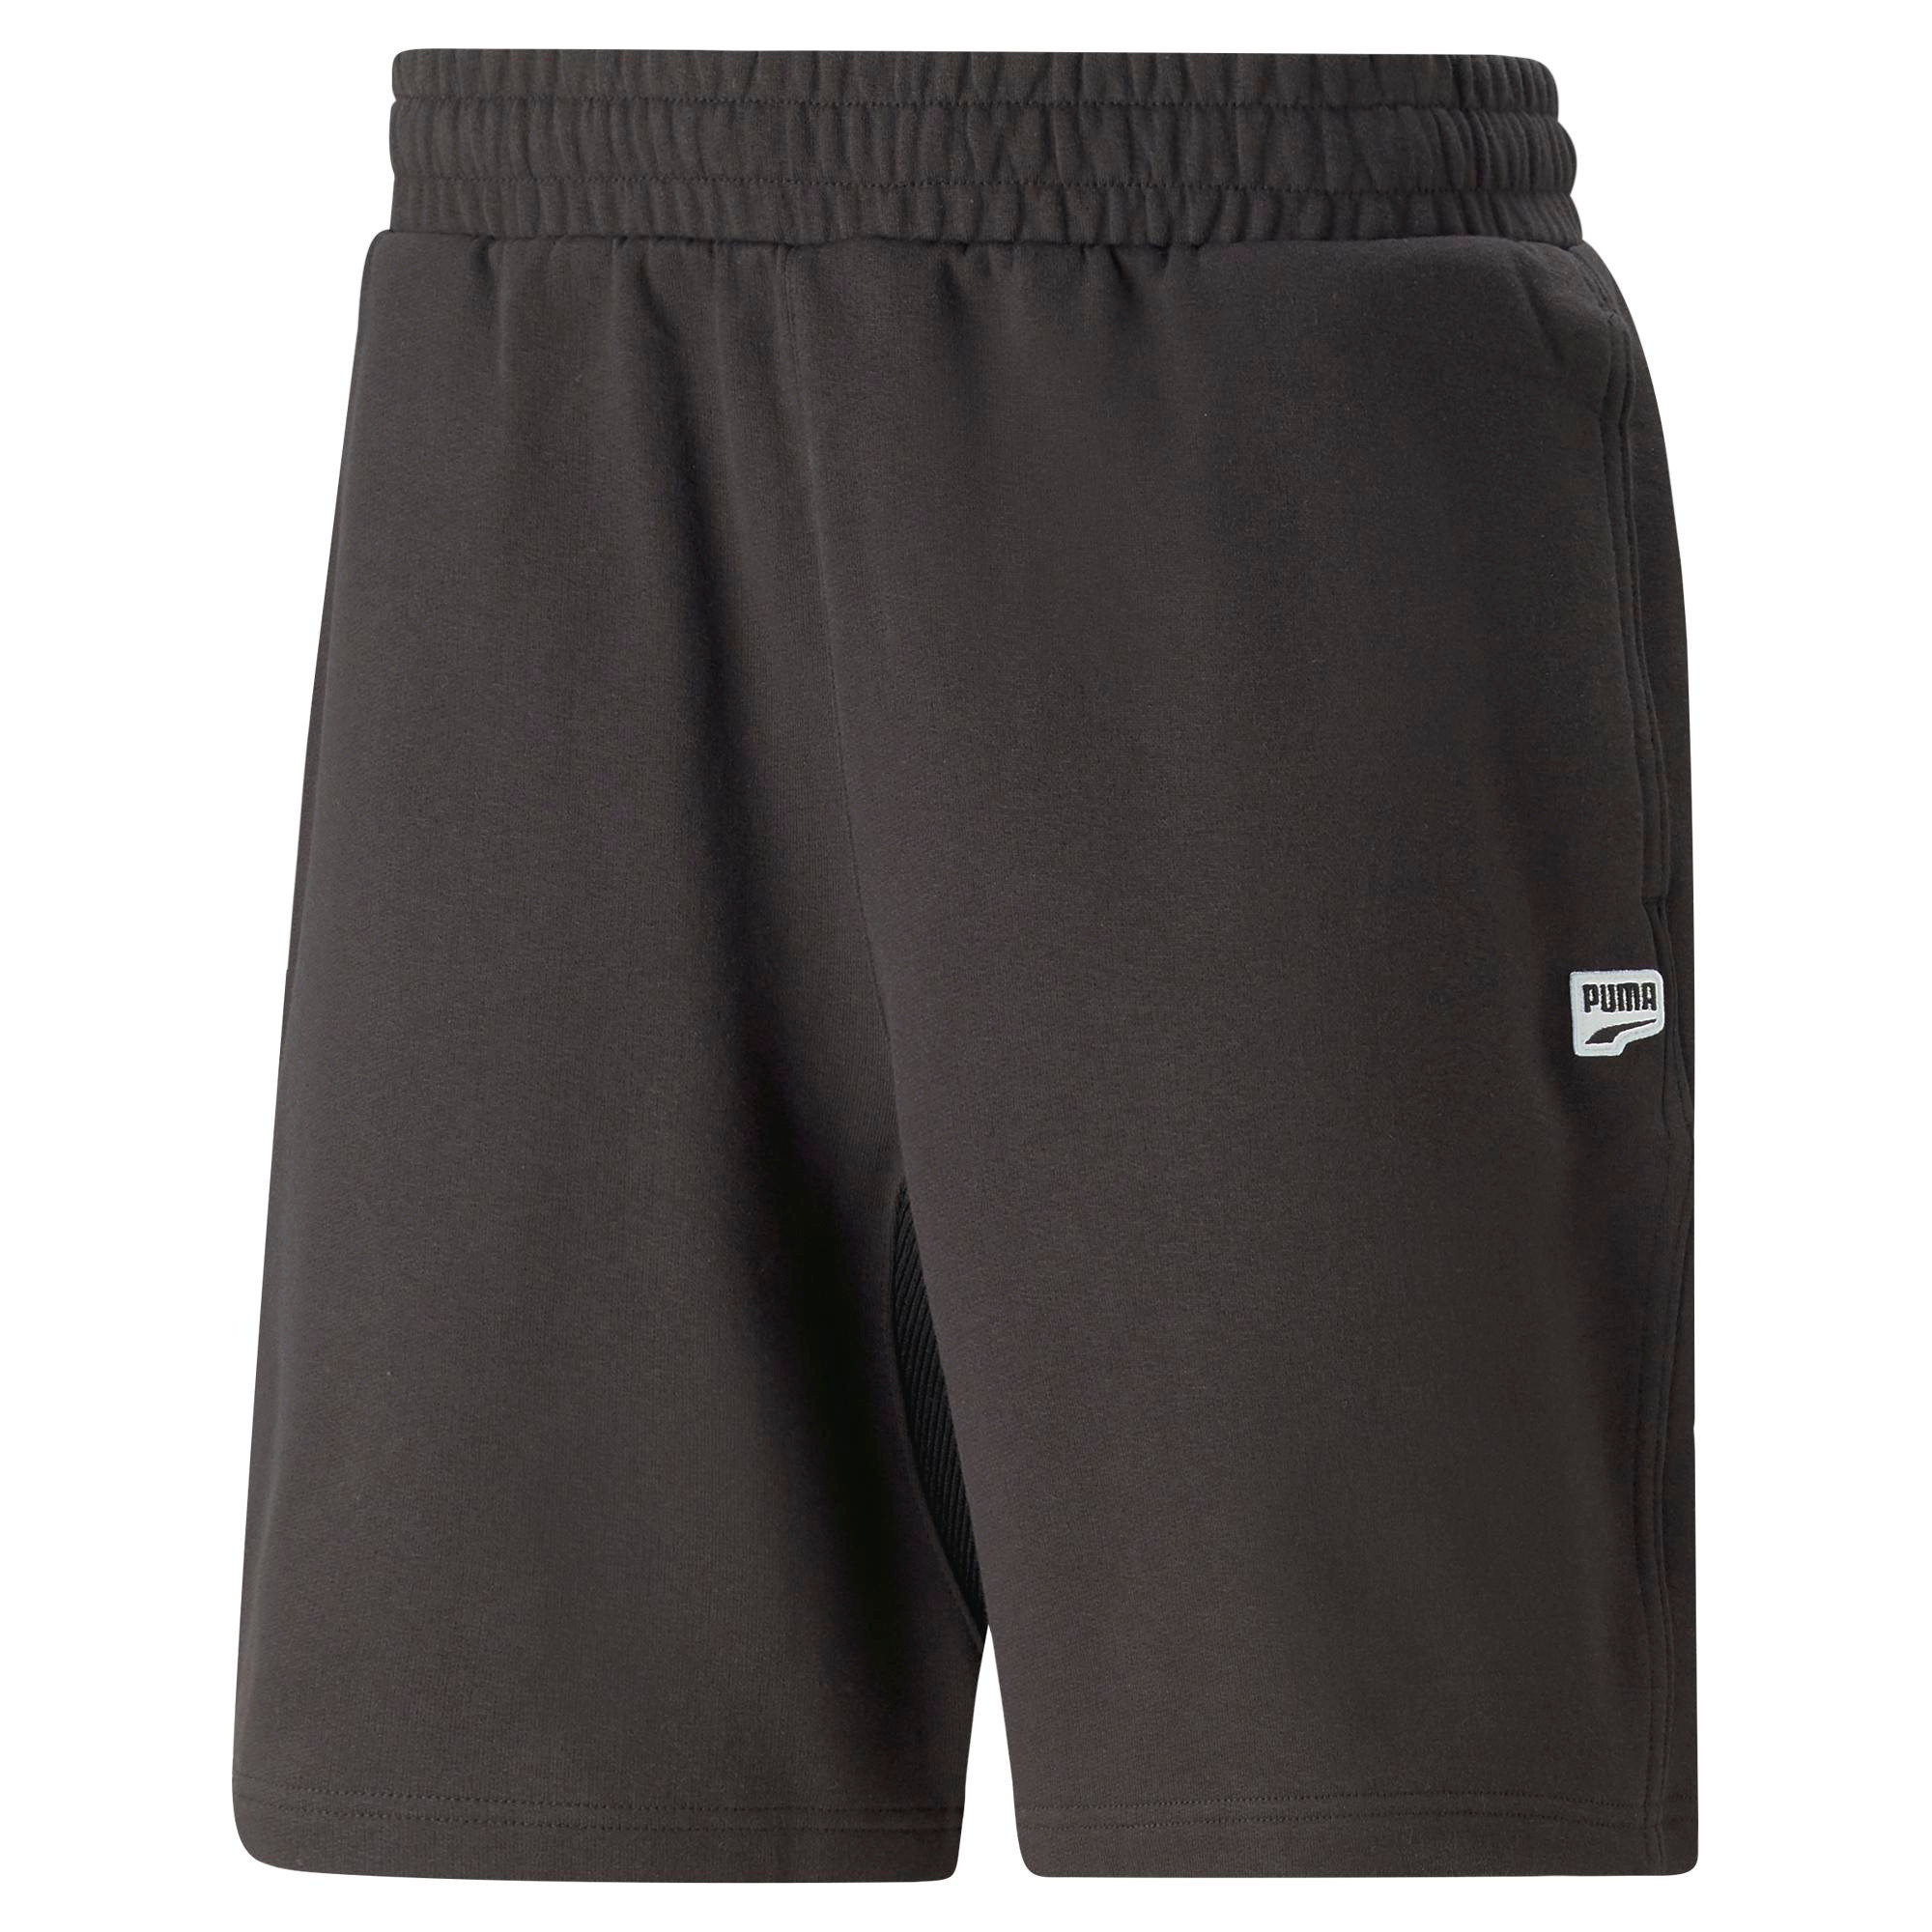 Puma - Cotton shorts, Black, large image number 0